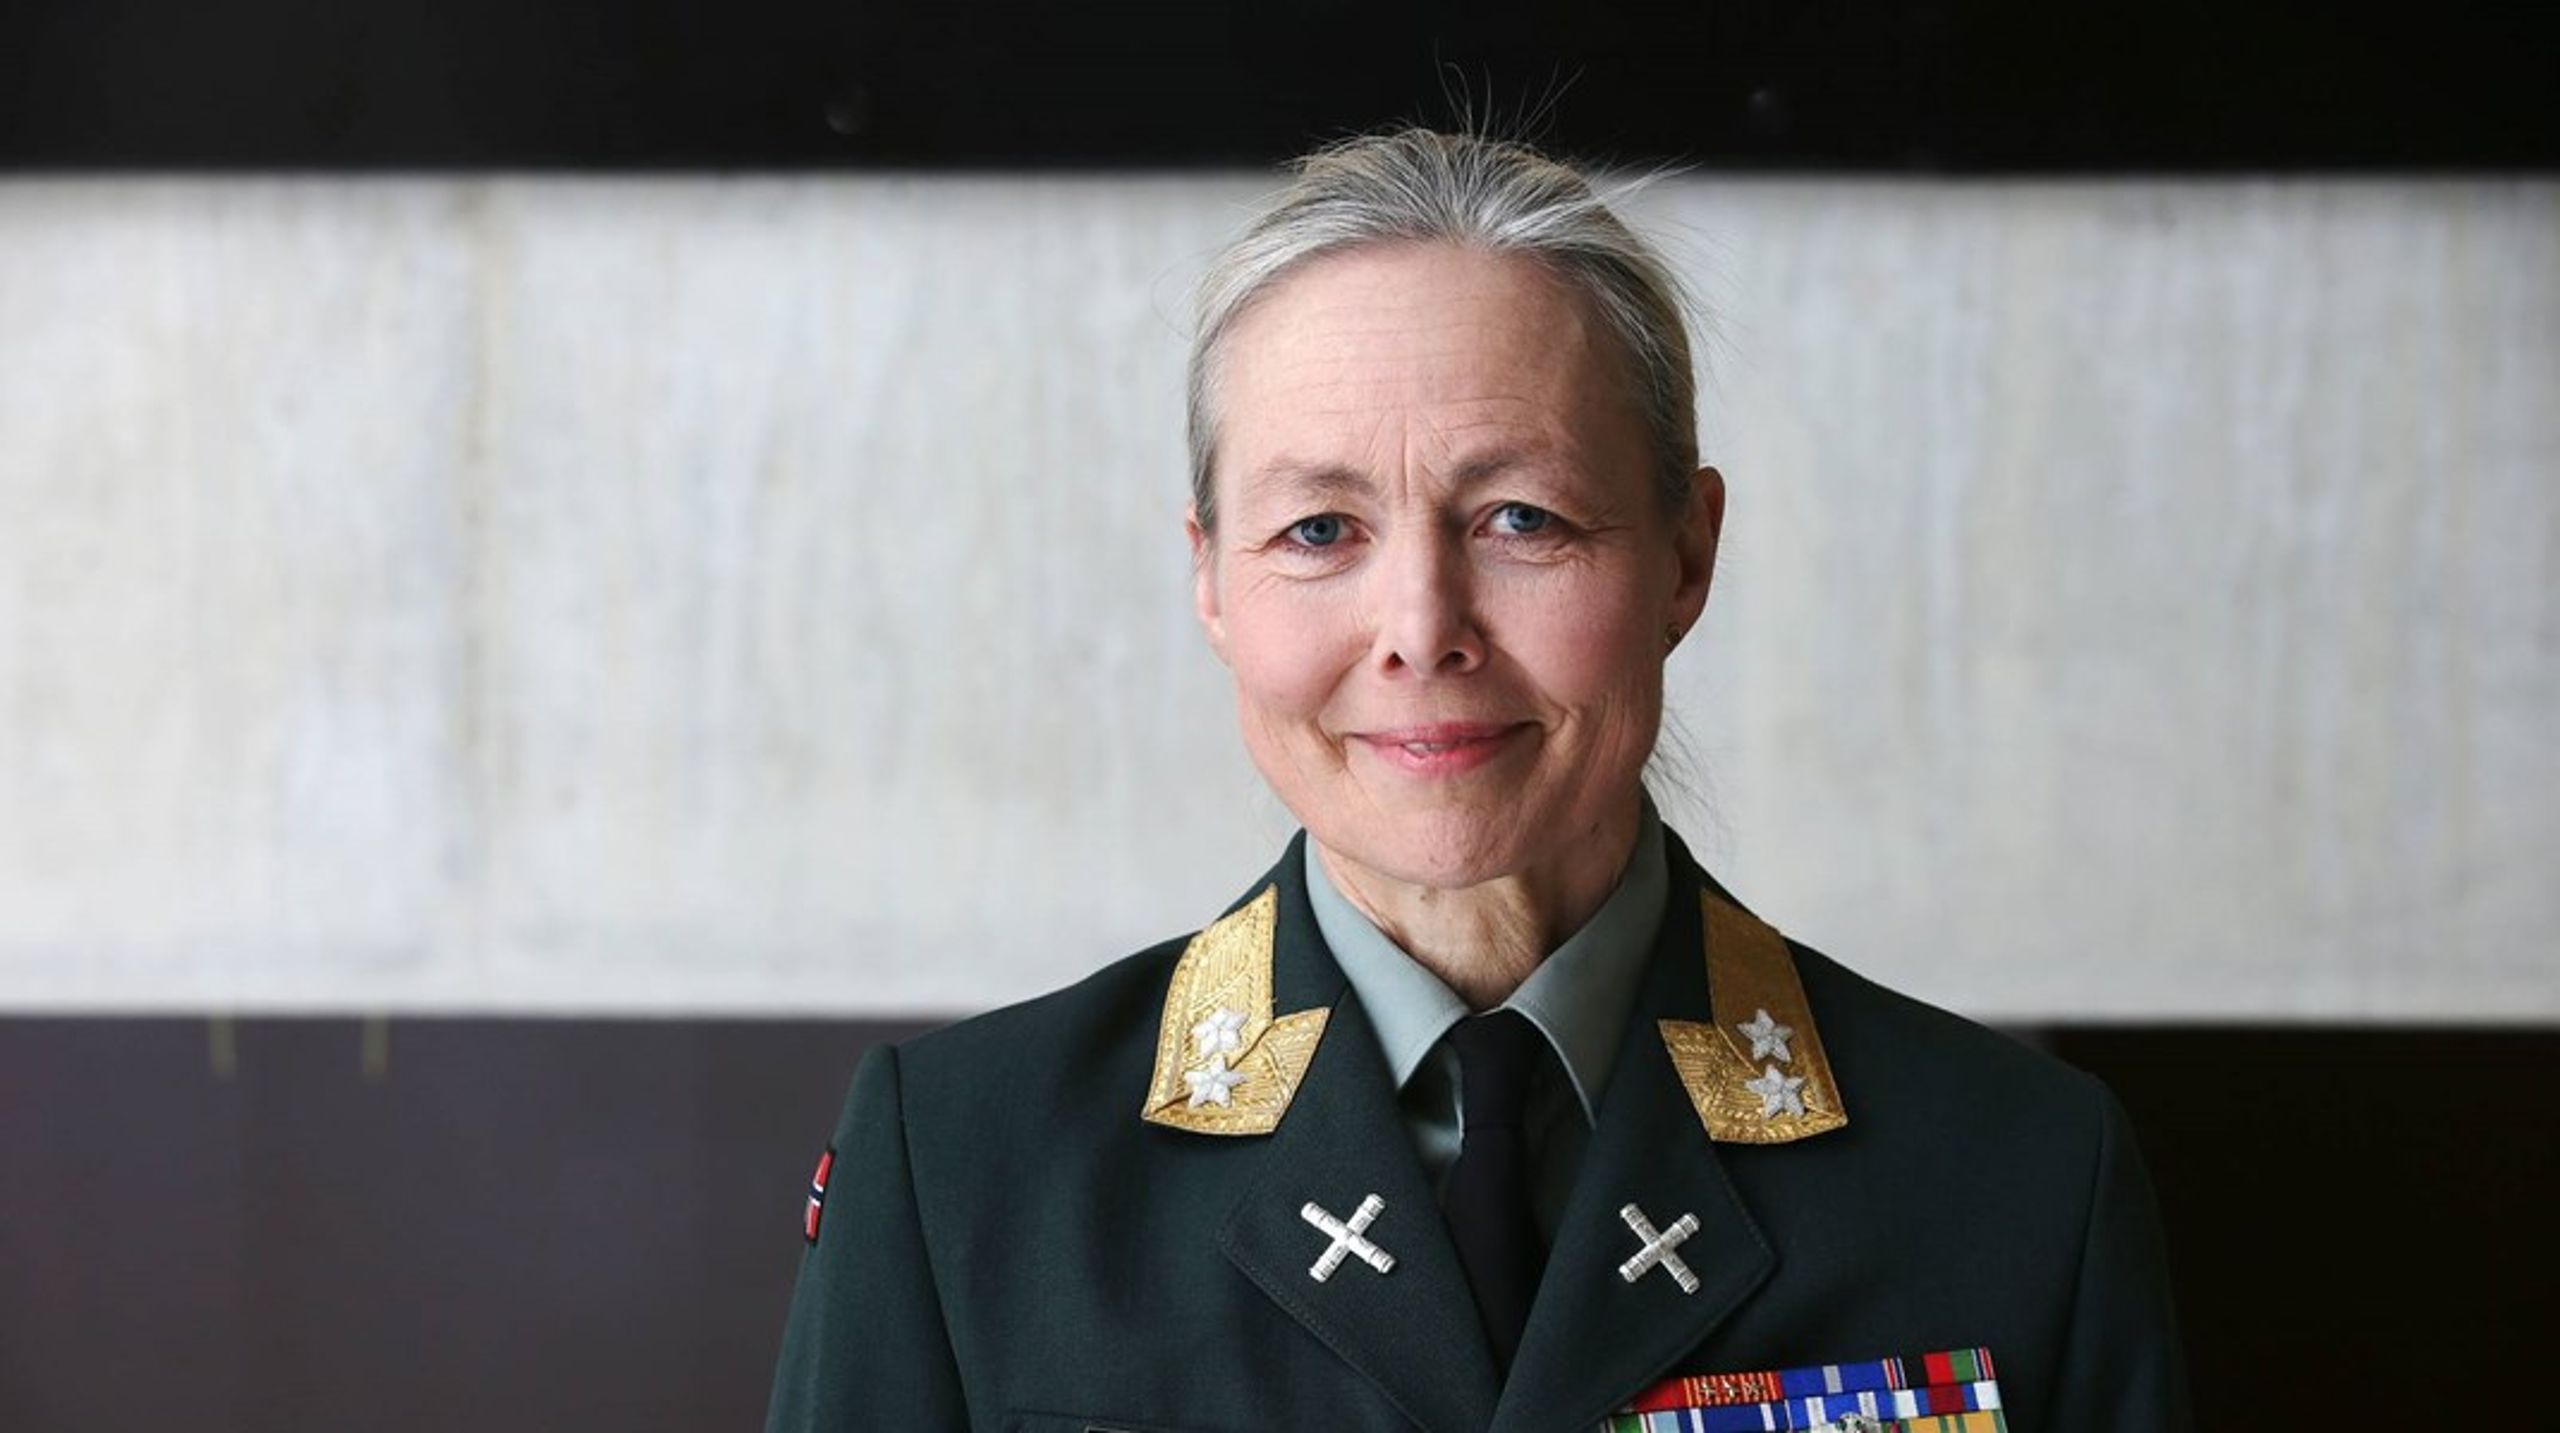 Ingrid Margrethe Gjerde er utnevnt til ny sjef for Forsvarsstaben.